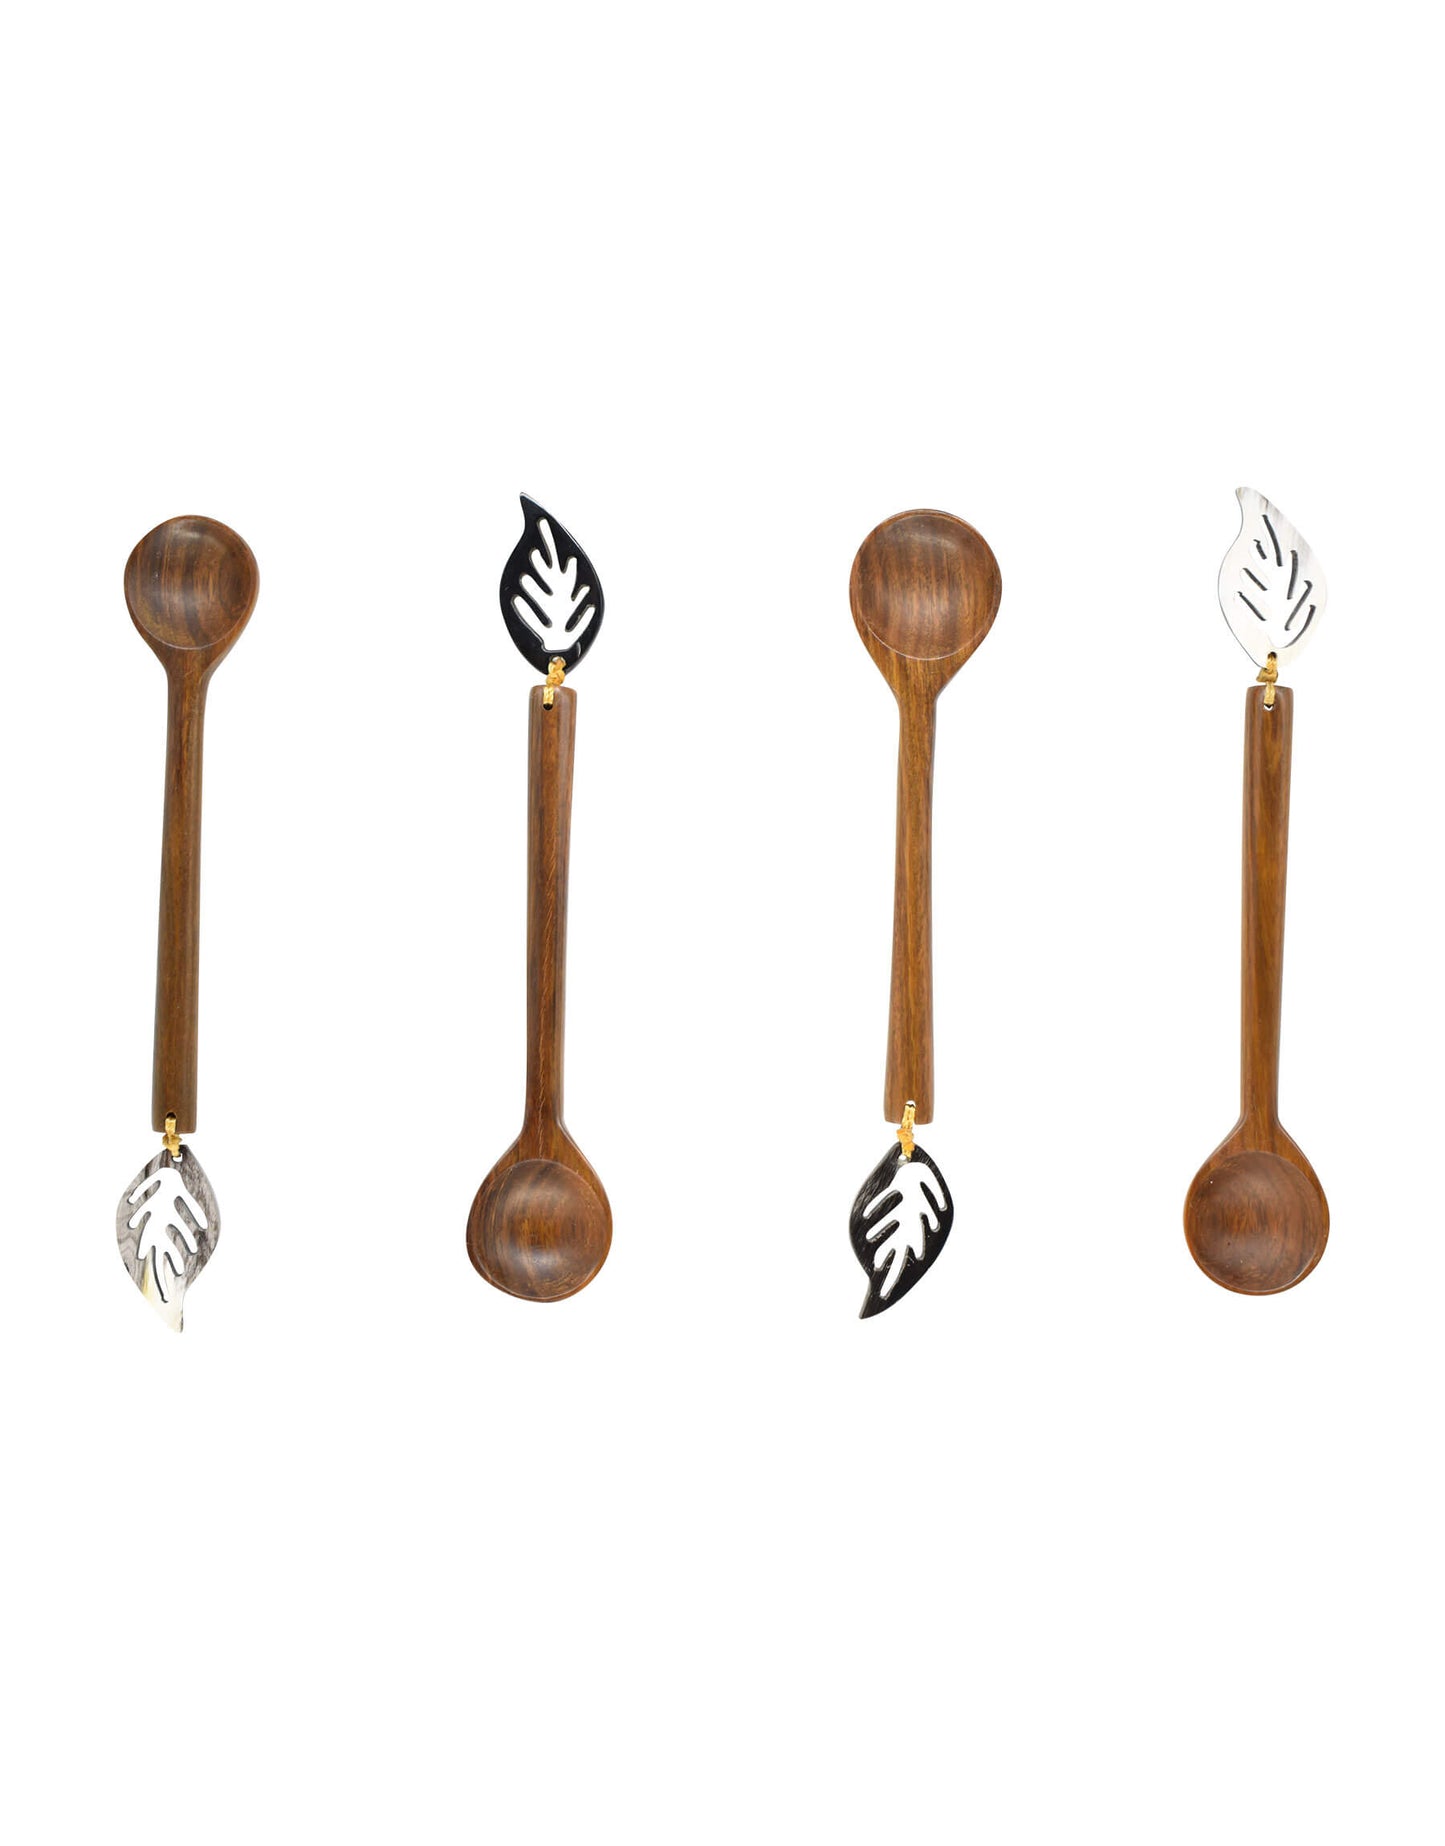 Set of 4 Laurel Leaf Coffee Spoons